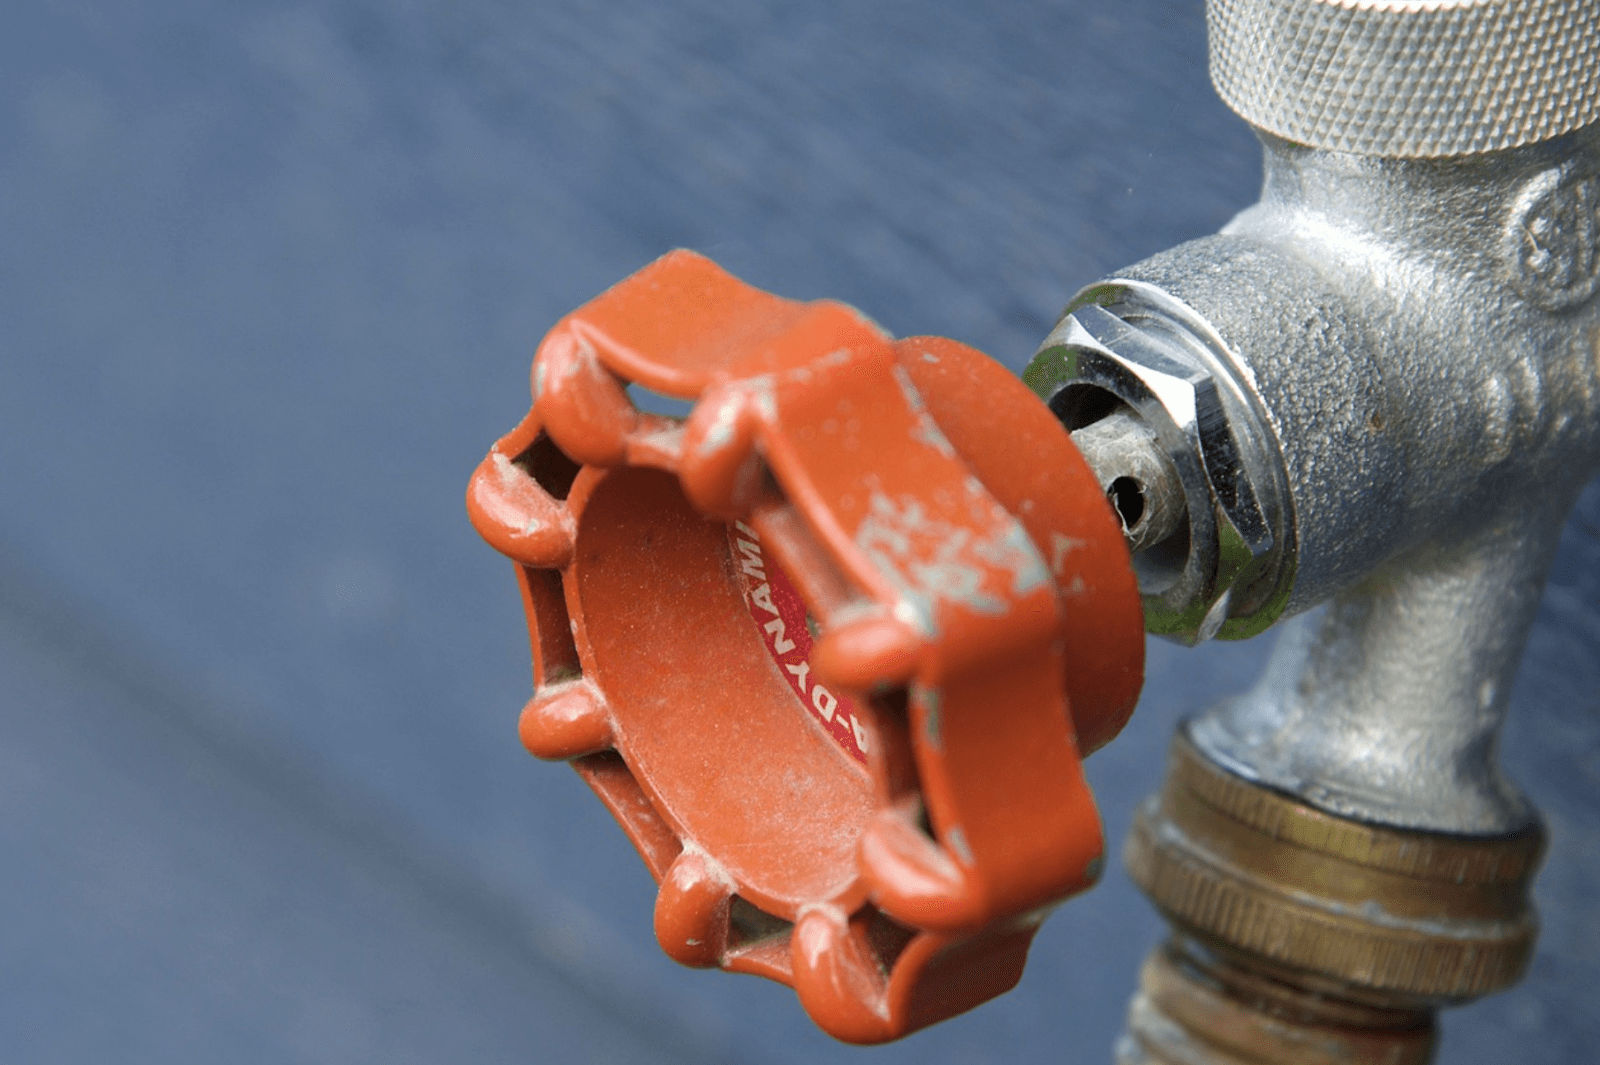 How to Repair Leaks in Water Lines